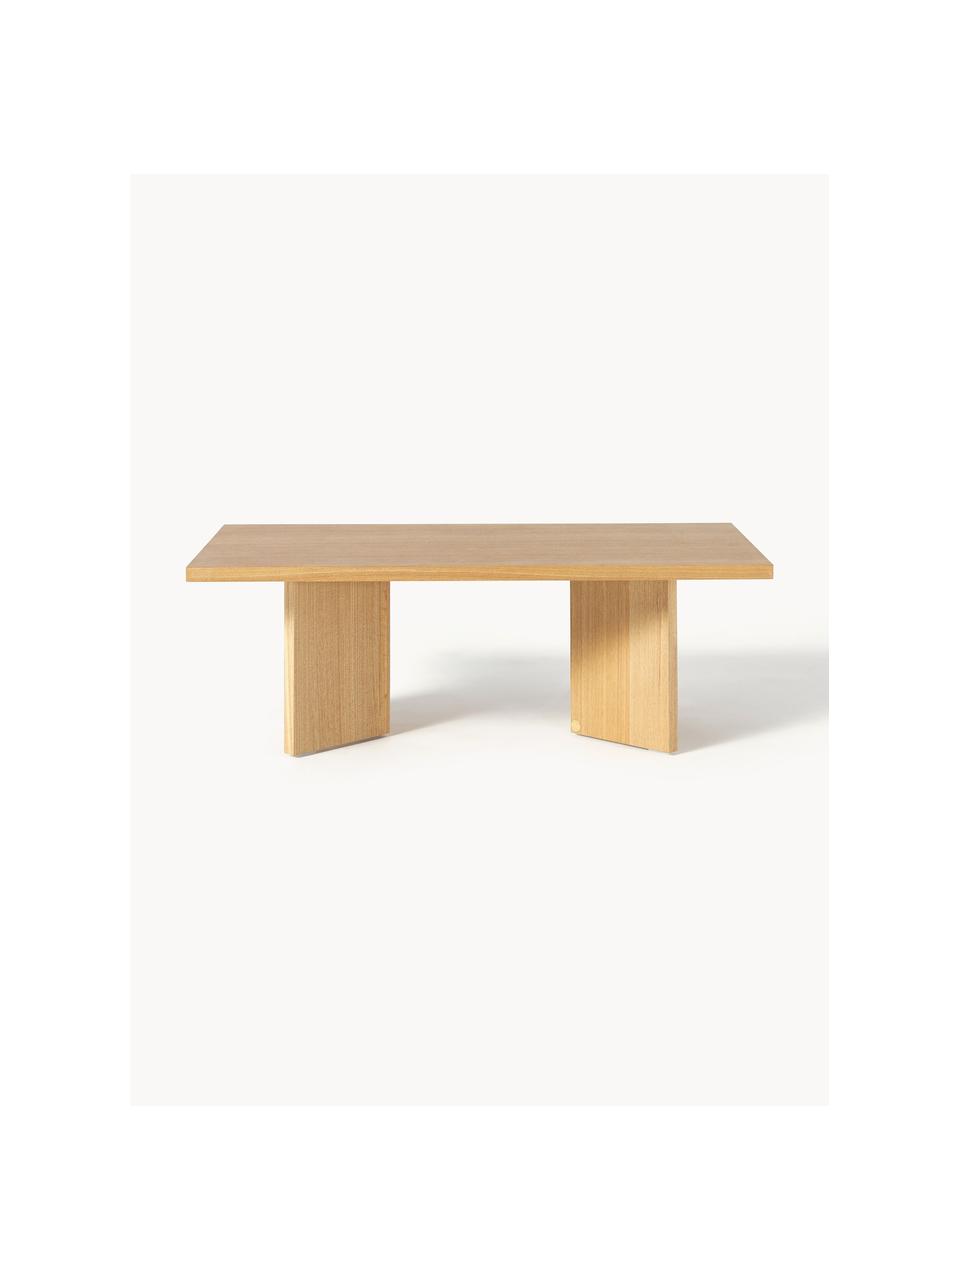 Dřevěný konferenční stolek Toni, Lakovaná MDF deska (dřevovláknitá deska střední hustoty) s dubovou dýhou, Jasanové dřevo, Š 100 cm, H 55 cm